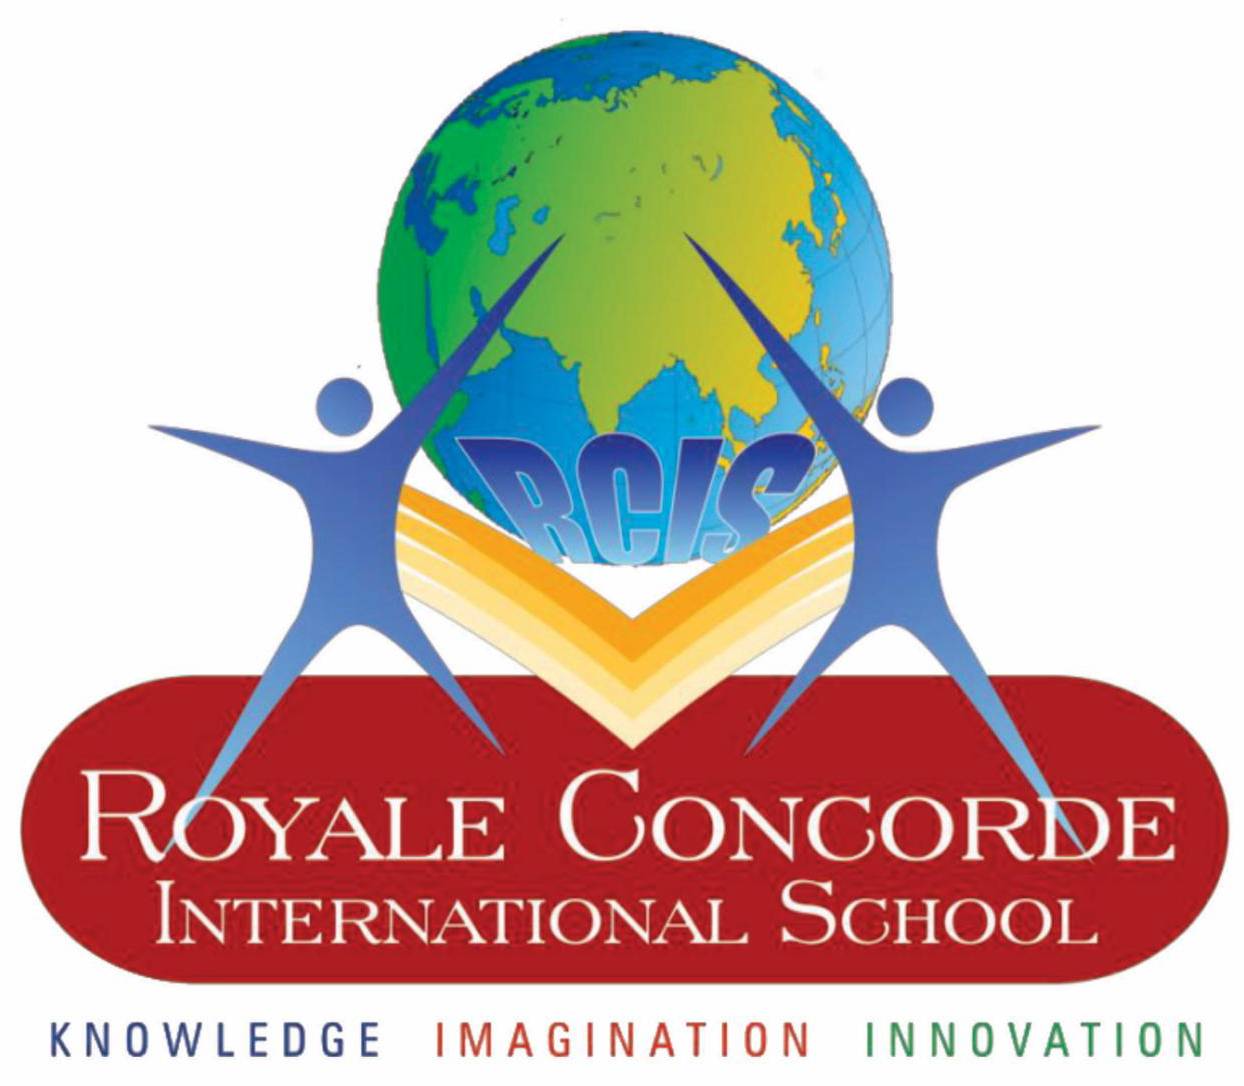 Royale concorde international school logo